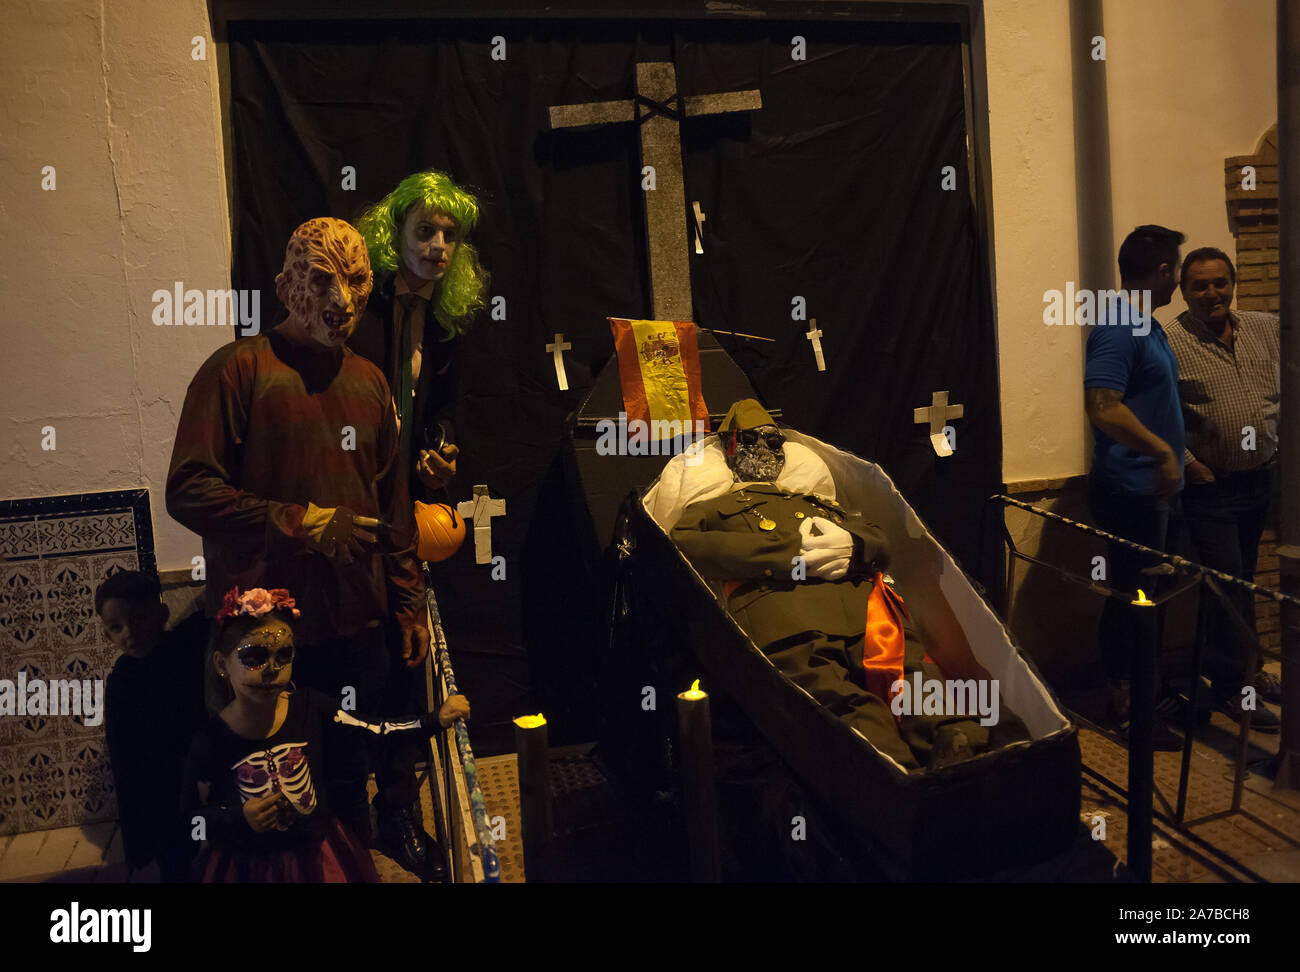 Menschen machen Fotos neben eine Puppe mit der Darstellung der spanische Diktator Francisco Franco mit einer spanischen Flagge in einem Sarg während der VI-Ausgabe von 'Churriana Noche del Terror' (churriana Horror Night) die Halloween Nacht in der Nachbarschaft von Churriana zu feiern. Wohnsitz in Churriana beteiligen sich an der Halloween Tag mit schrecklichen Kostüme gekleidet, ihre Häuser zu verzieren und mit unheimlichen Leistungen entlang der Straßen. Die 'Churriana Horror Night' ist eine der beliebtesten Veranstaltungen in der Stadt markiert die Halloween Tag, und bei dieser Gelegenheit das Thema der Ausgabe ist die Hexen. Stockfoto